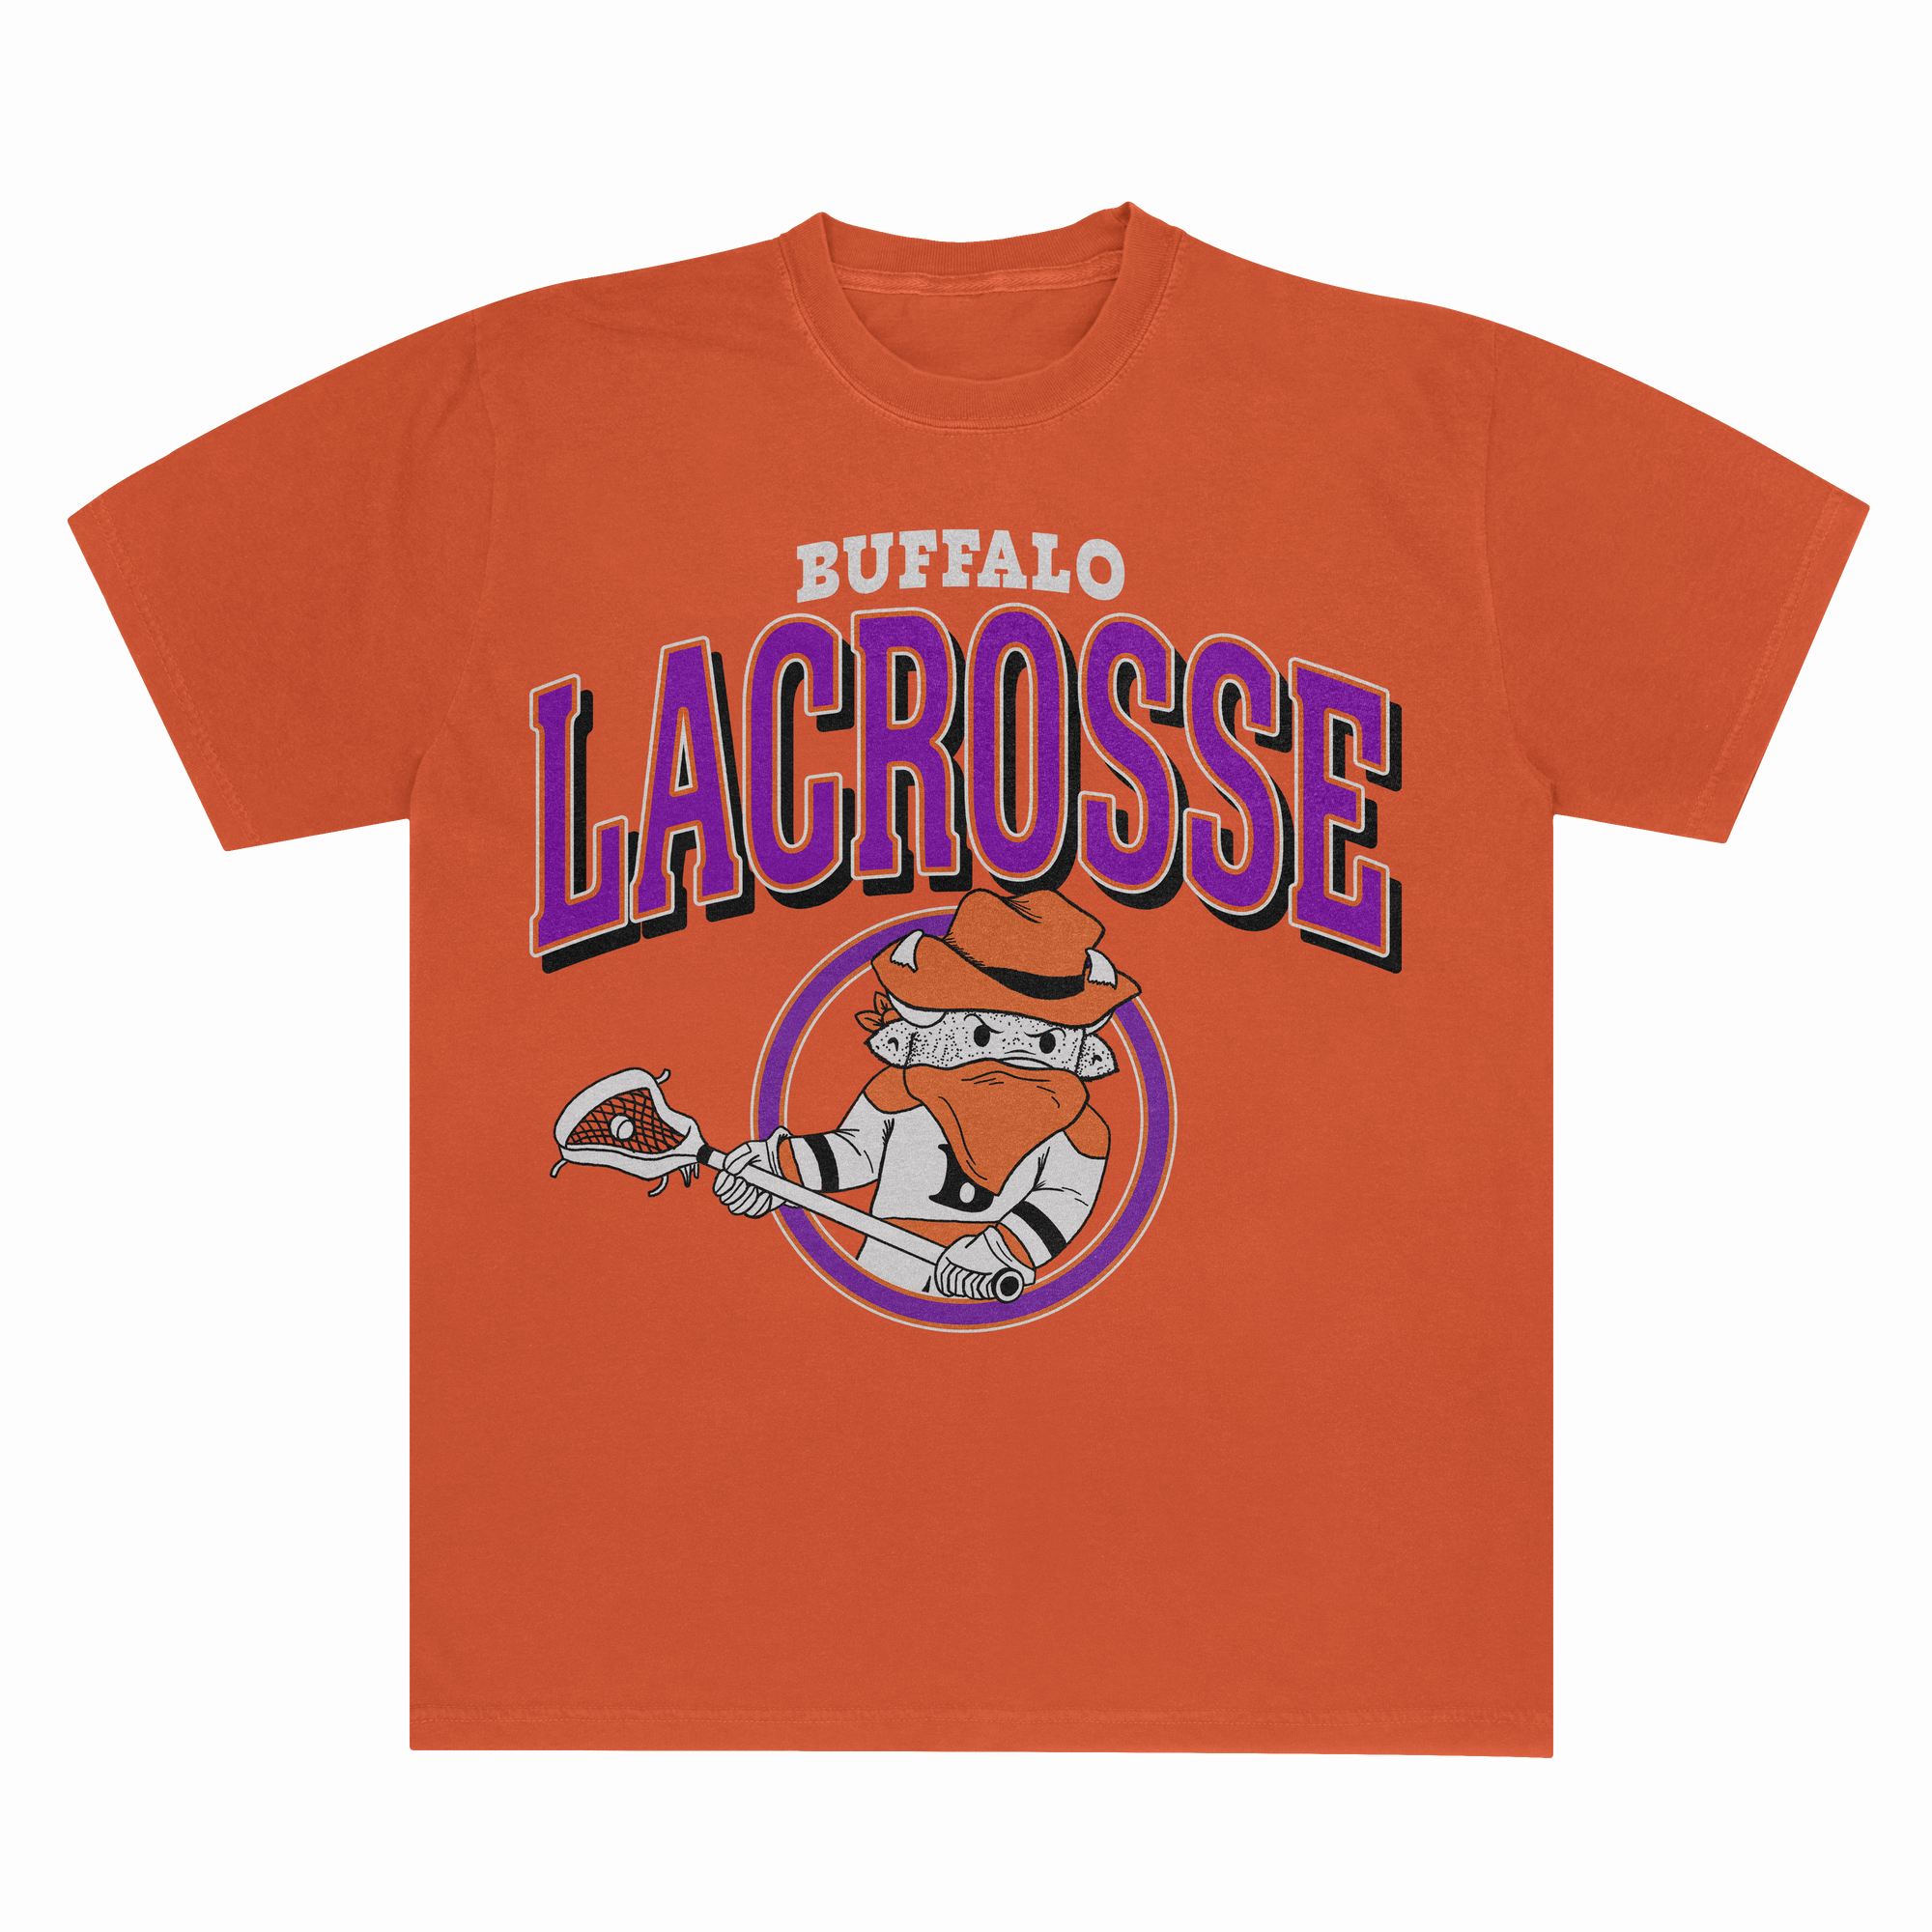 Buffalo Lacrosse Orange Short Sleeve Shirt with buffalo playing lacrosse drawing